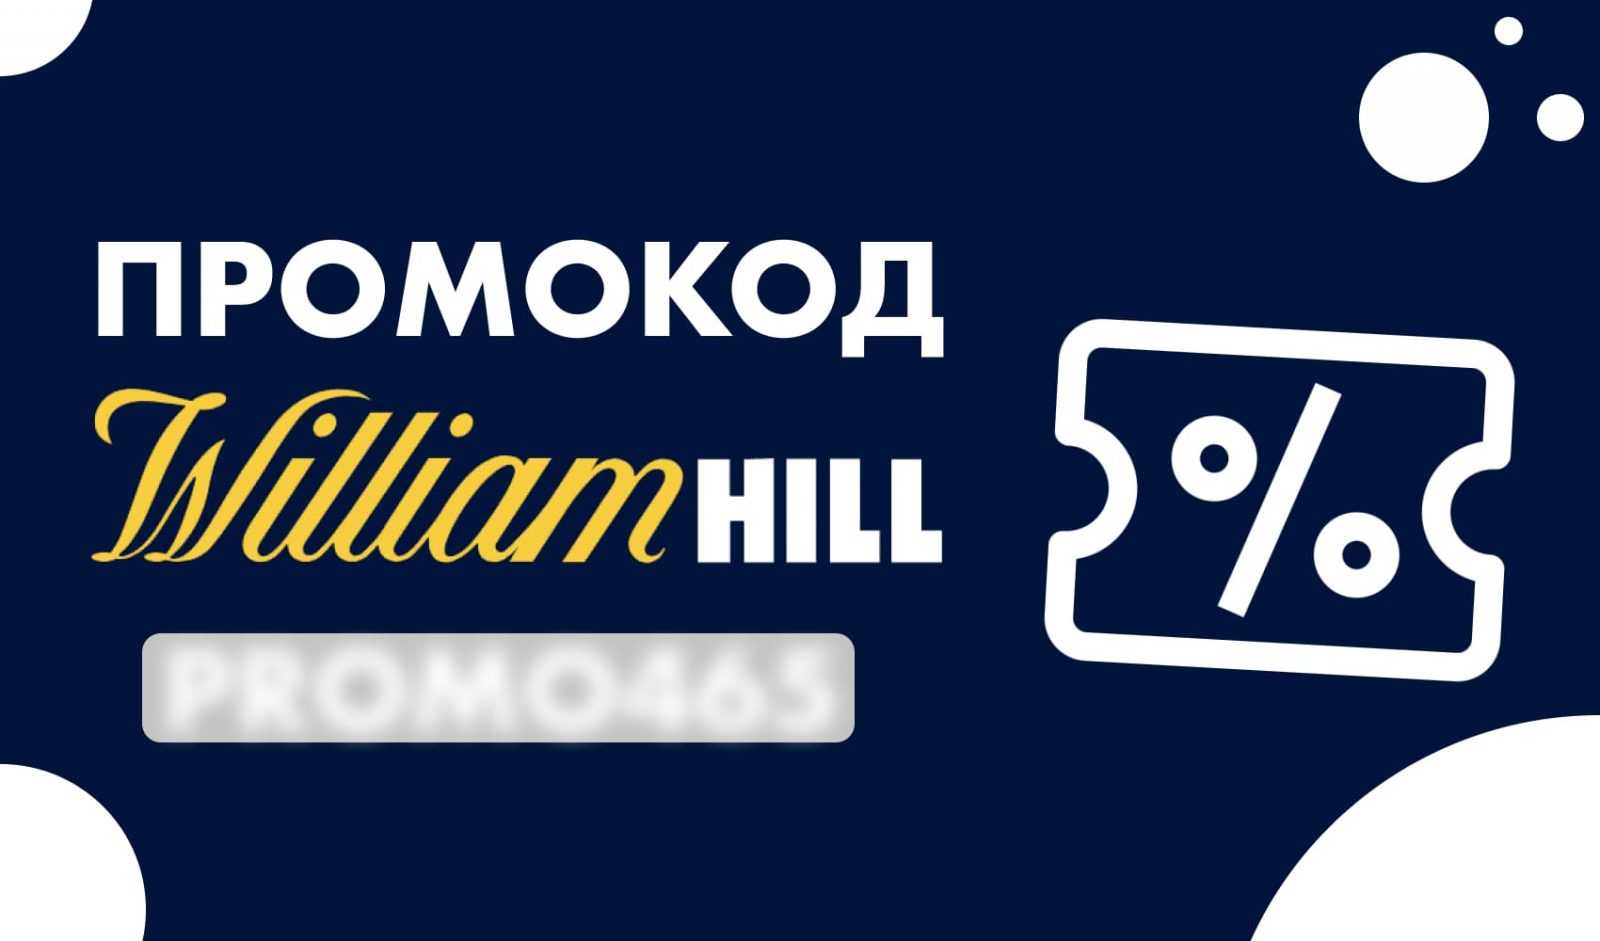 William hill букмекерская контора промокод покер шарк онлайн играть бесплатно без регистрации на яндексе